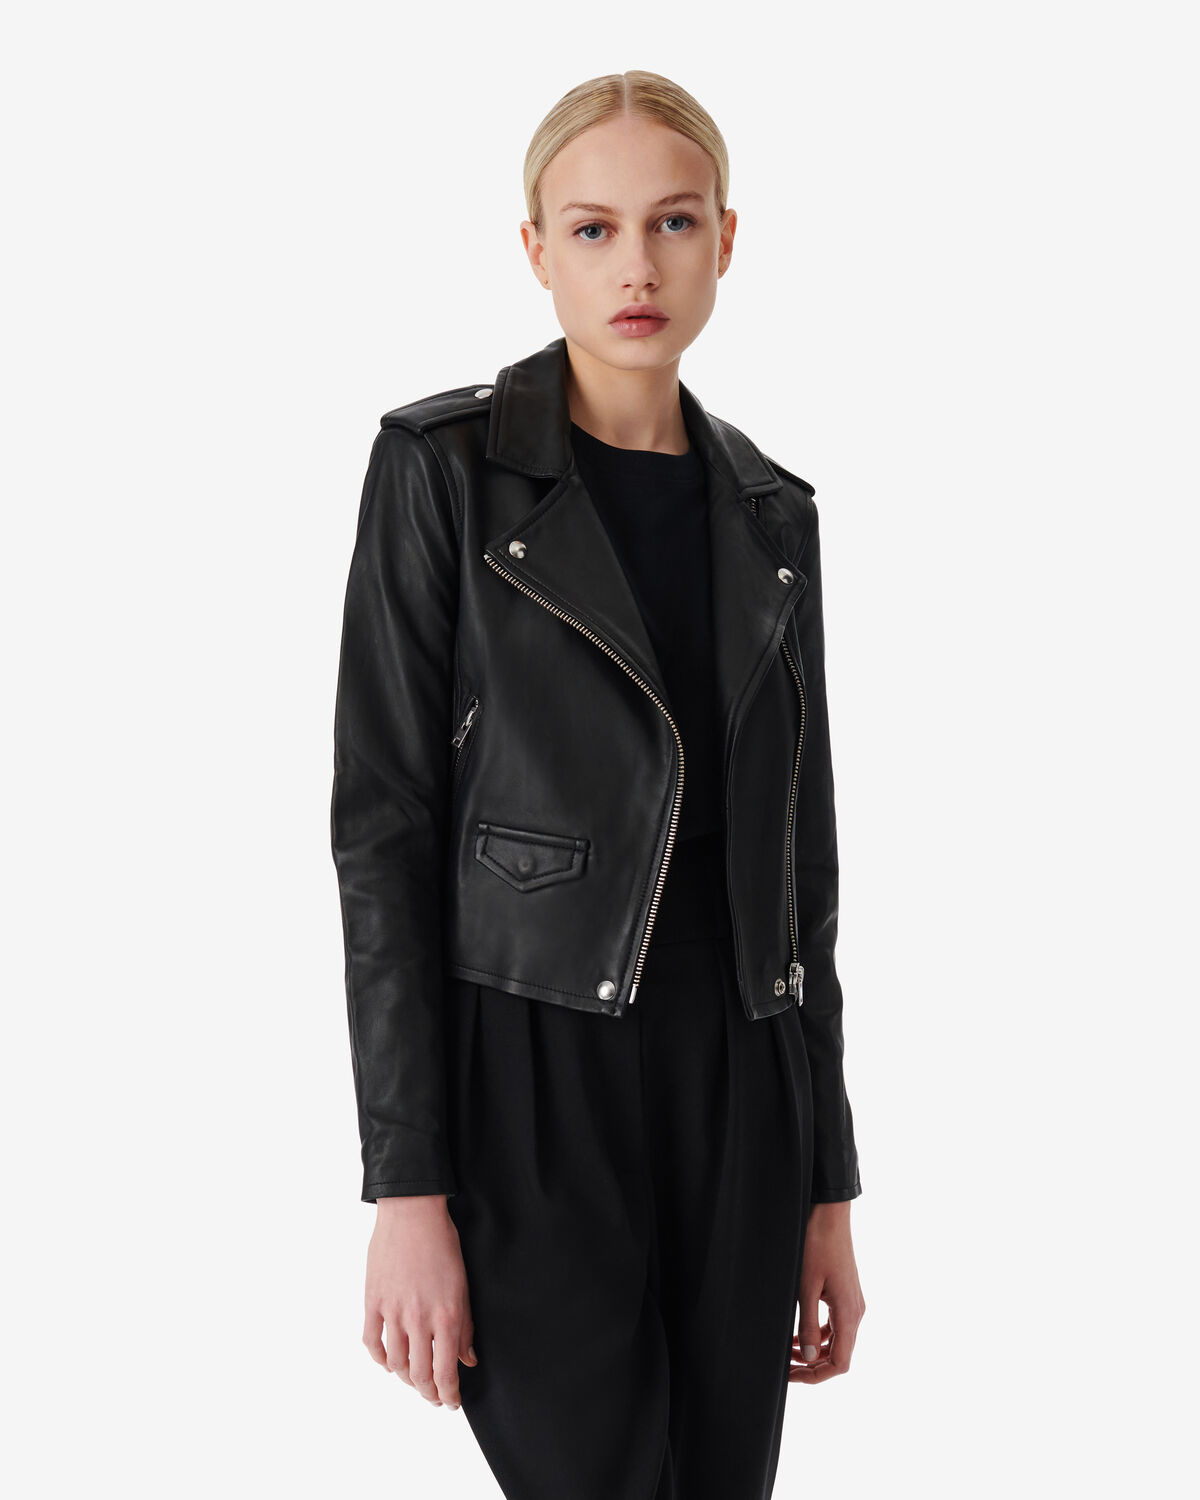 Ashville Leather Jacket Black by IRO Paris | Coshio Online Shop